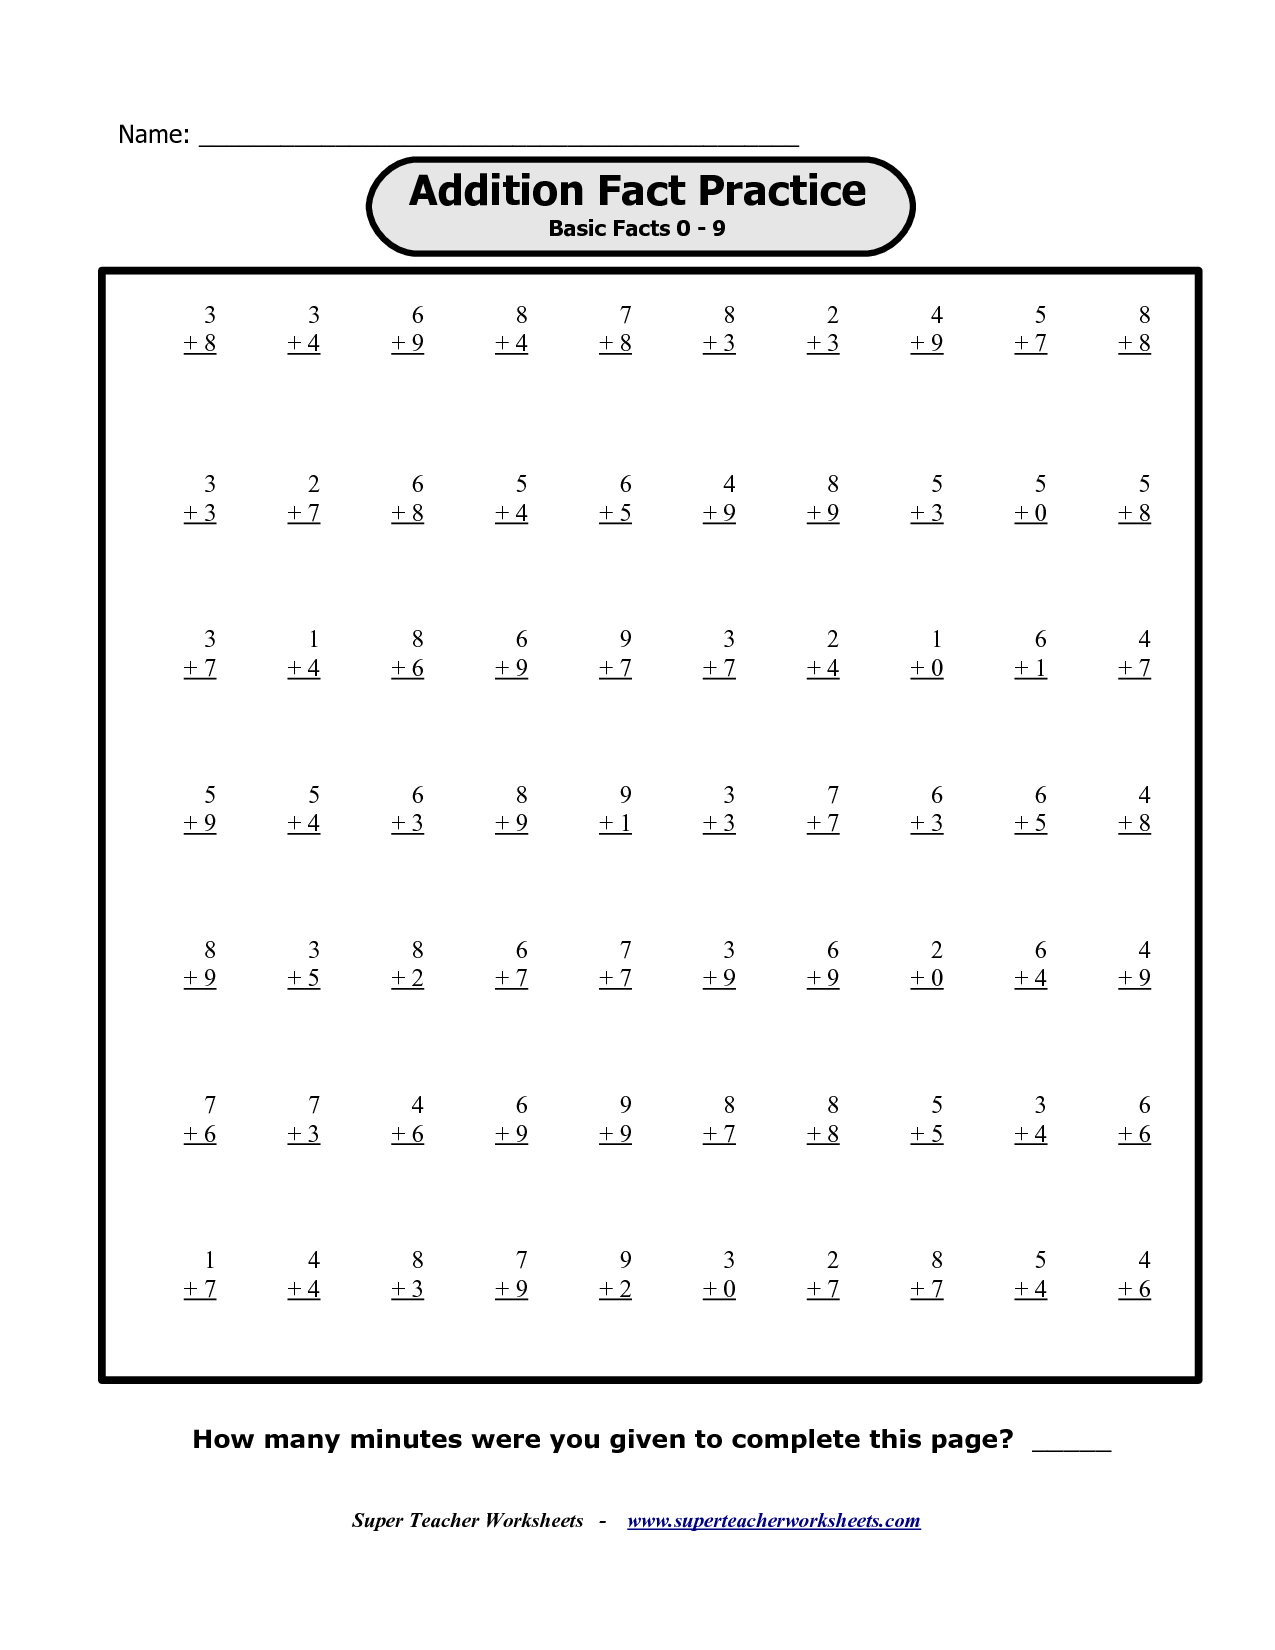 new-printable-multiplication-facts-worksheets-images-worksheet-for-kids